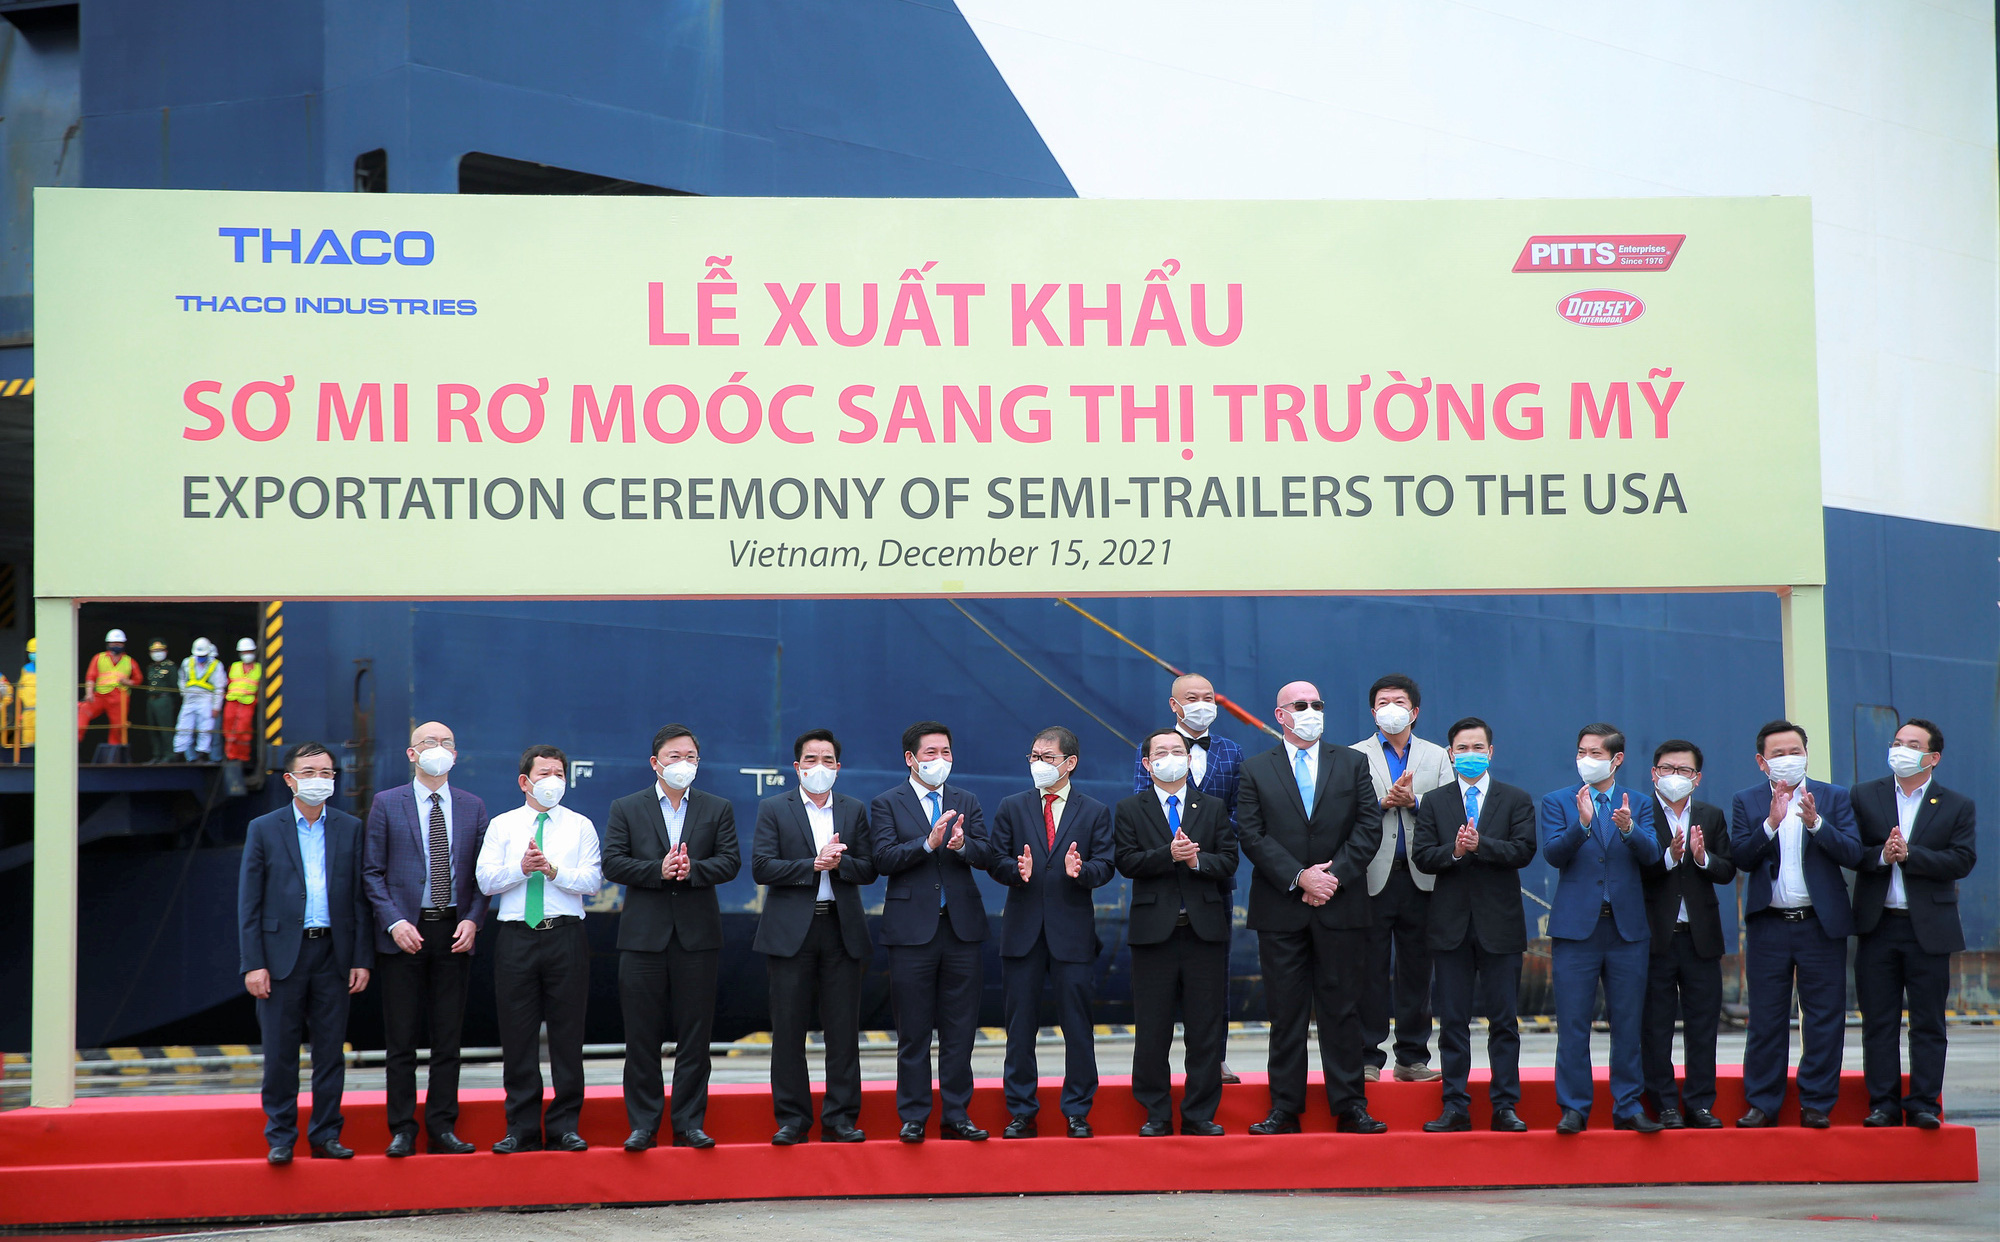 Việt Nam xuất khẩu lô 870 sơmi rơmoóc đầu tiên sang thị trường Mỹ